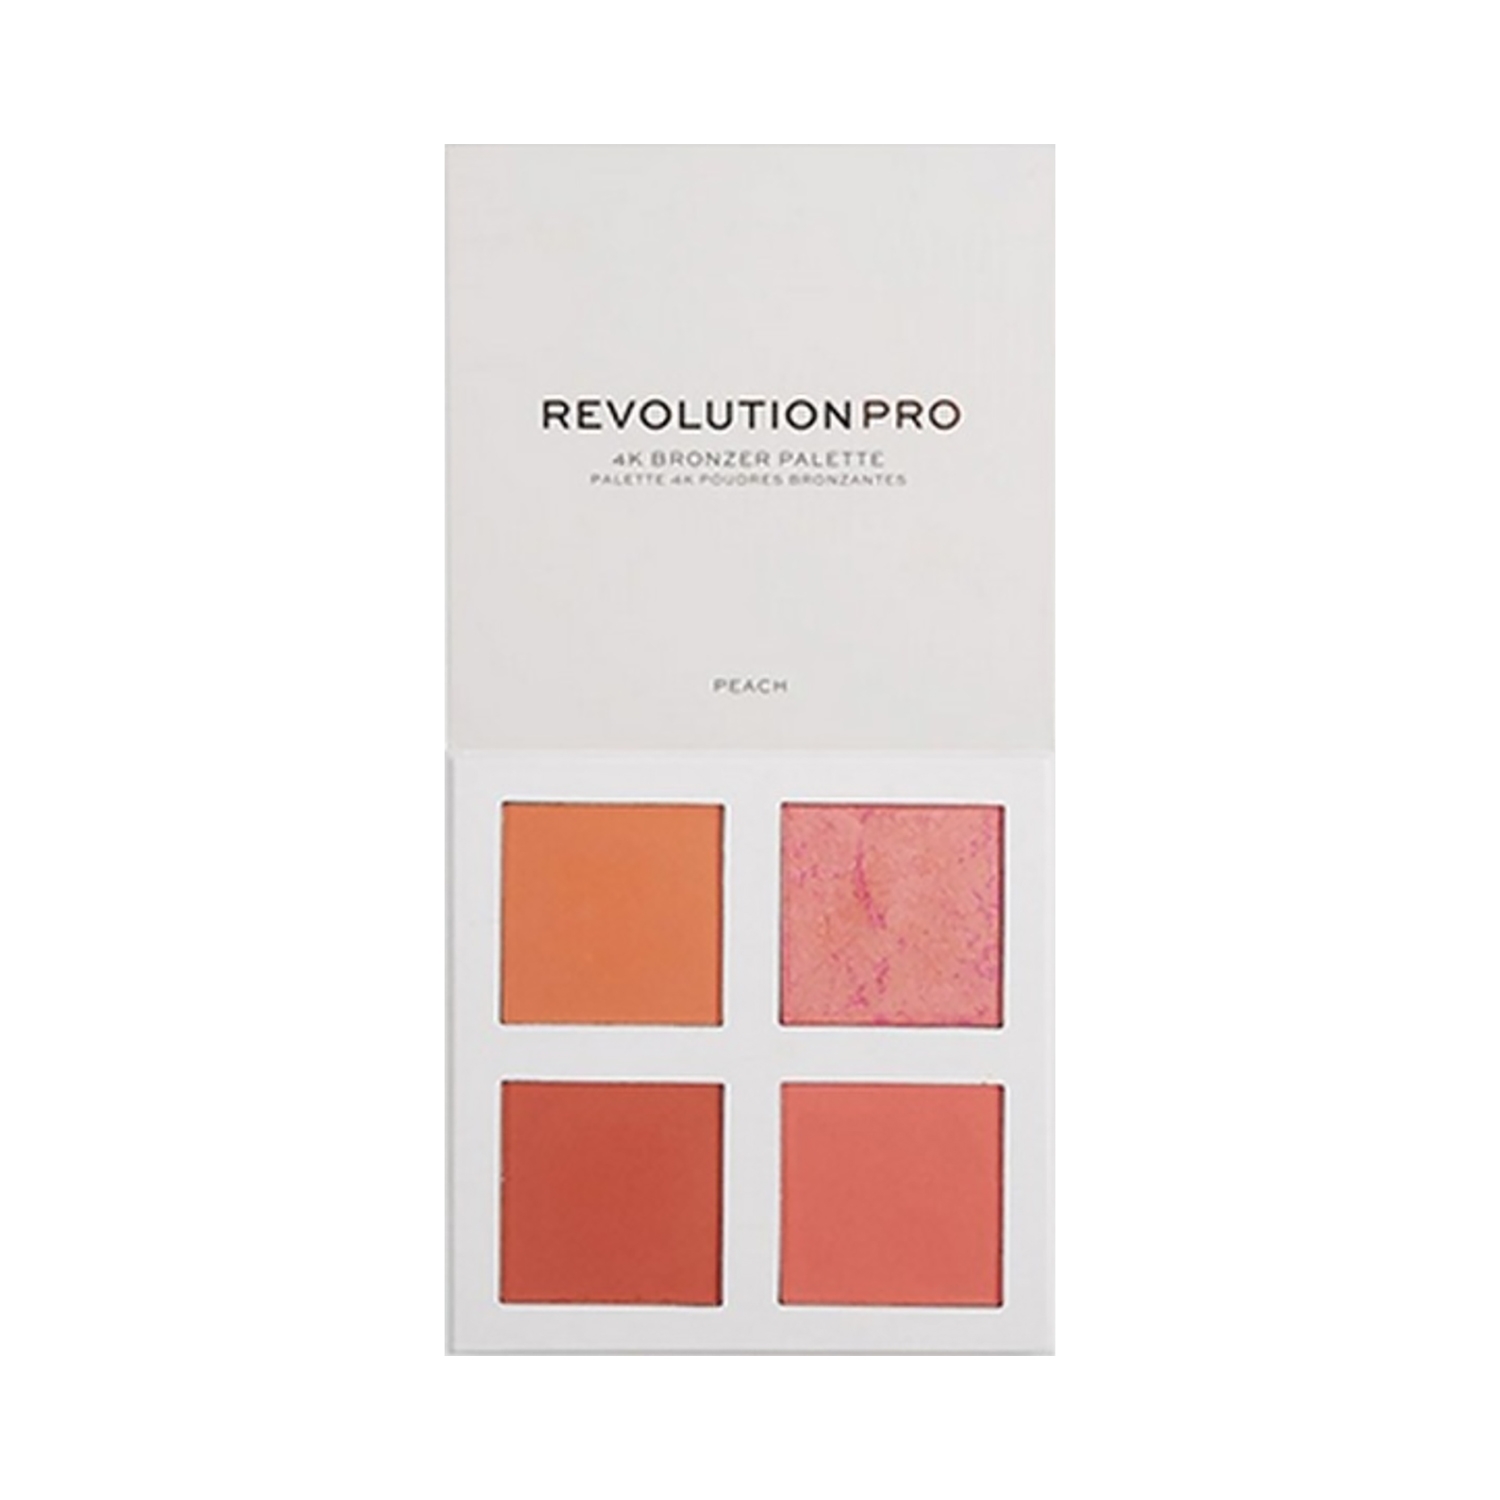 Revolution Pro | Revolution Pro 4K Blush Palette - Peach (12g)